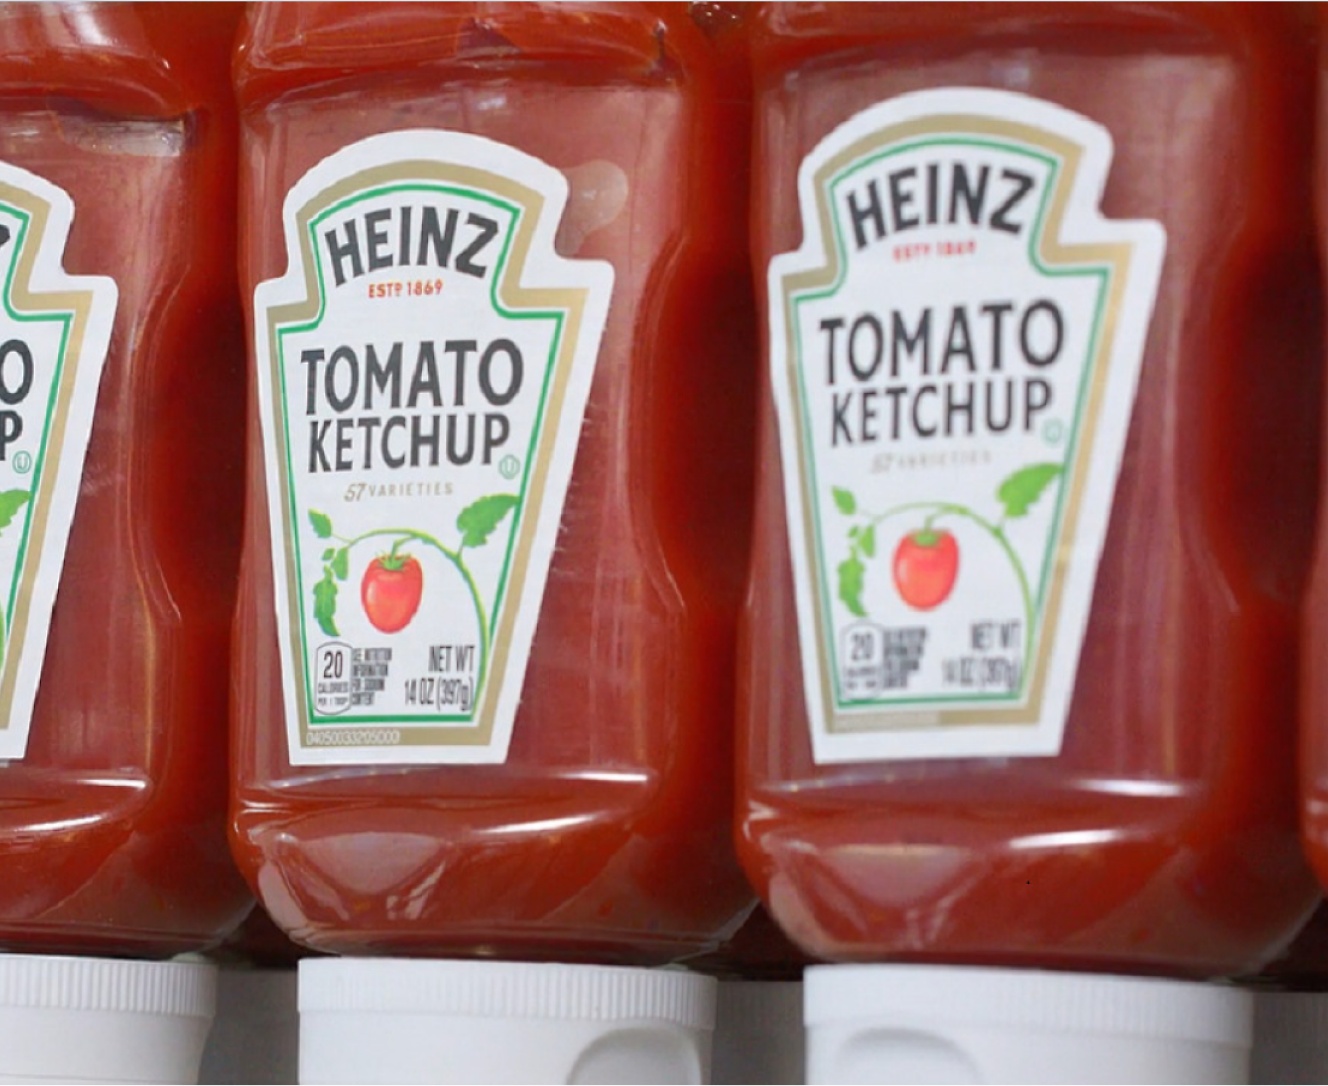 Várias garrafas de ketchup Heinz Tomato colocadas numa prateleira